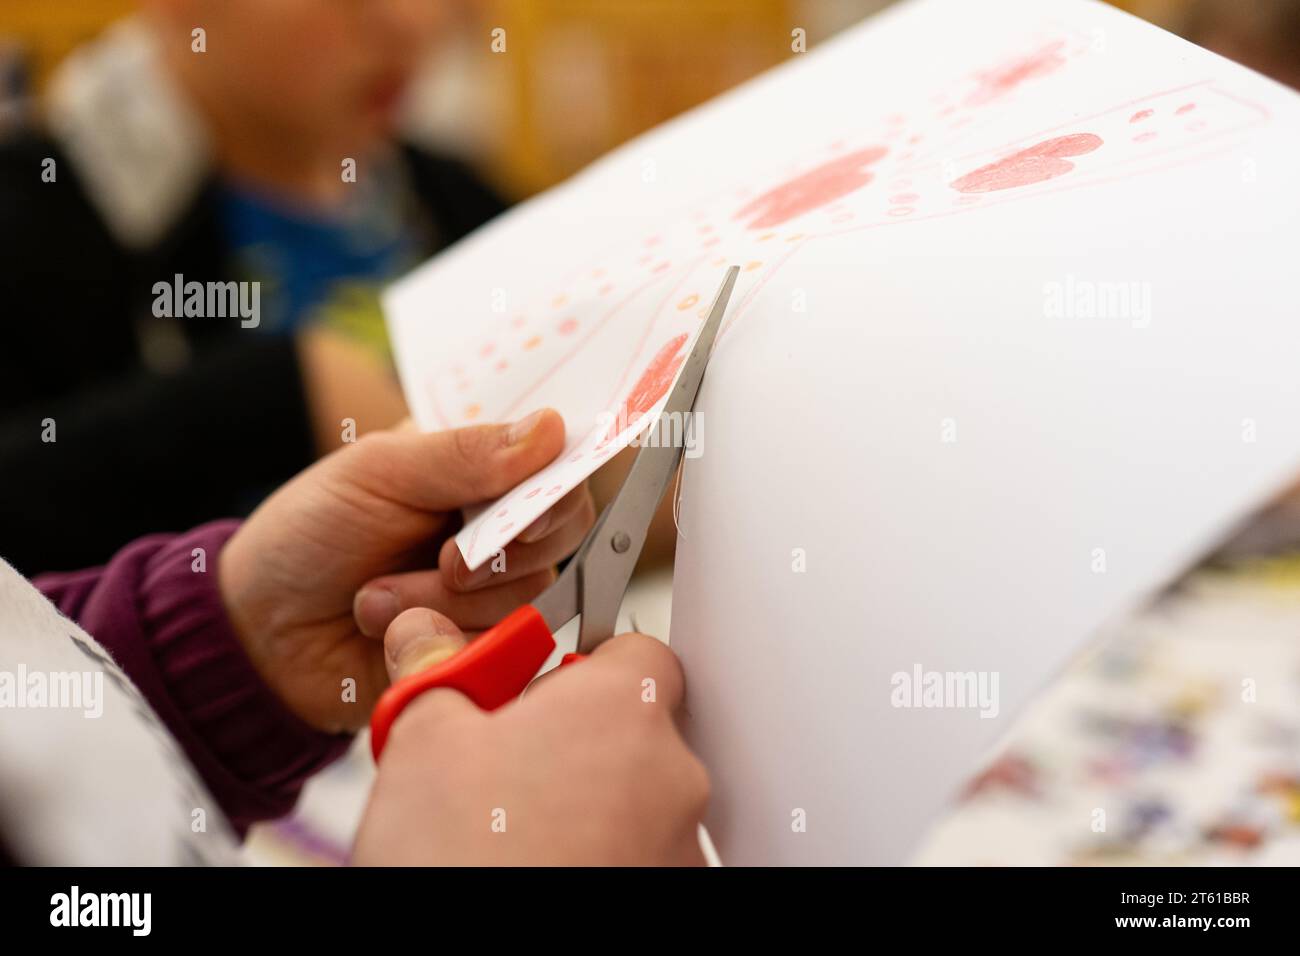 Primo piano delle mani del bambino che taglia un pezzo di carta con le forbici Foto Stock